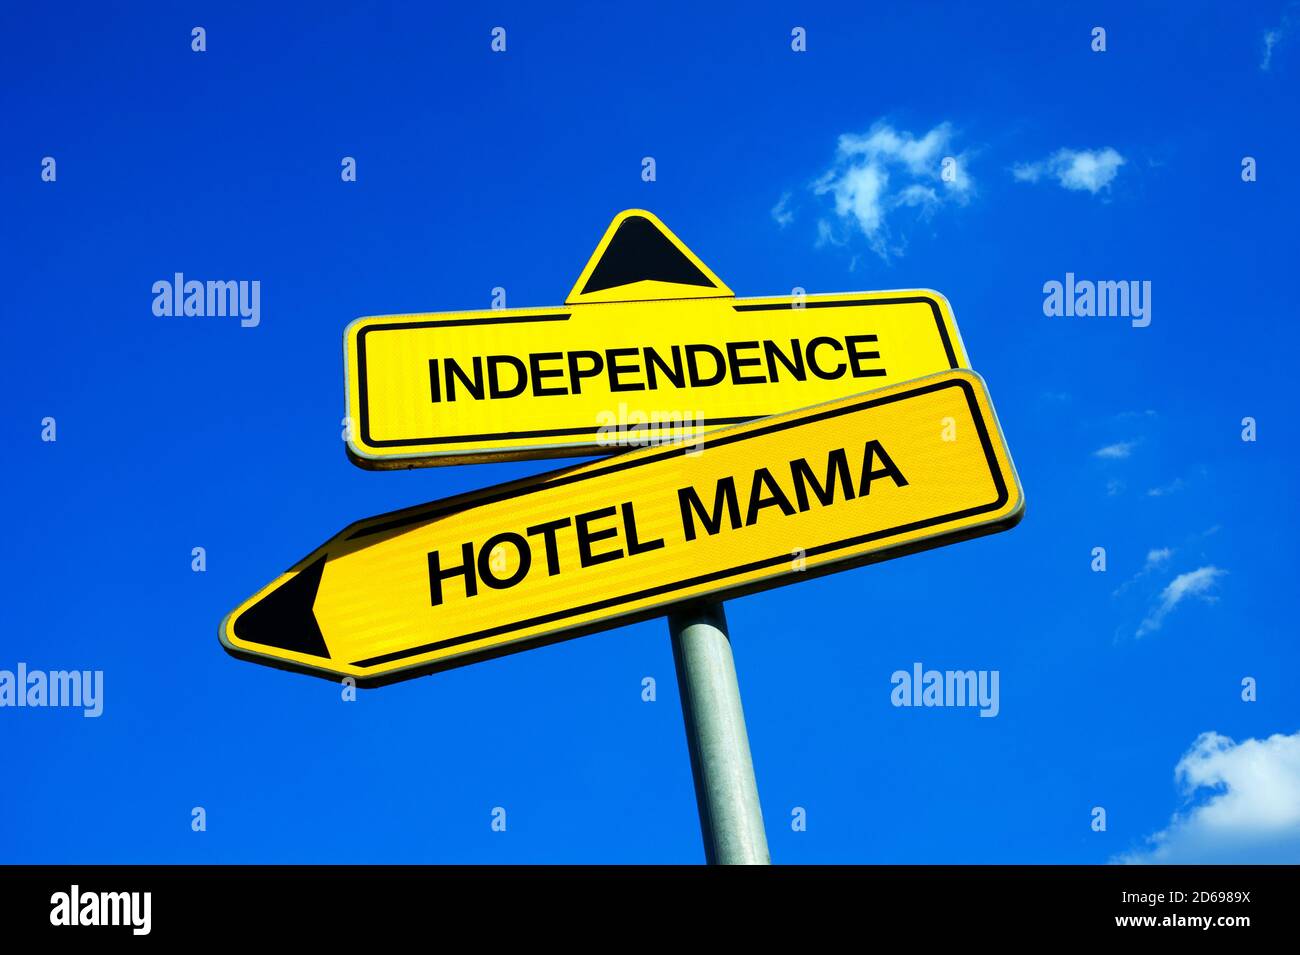 Unabhängigkeit vs Hotel Mama - Verkehrsschild mit zwei Möglichkeiten - Zusammenleben mit Eltern in Elternhaus vs unabhängig, selbstbestimmt und eigene und Stockfoto